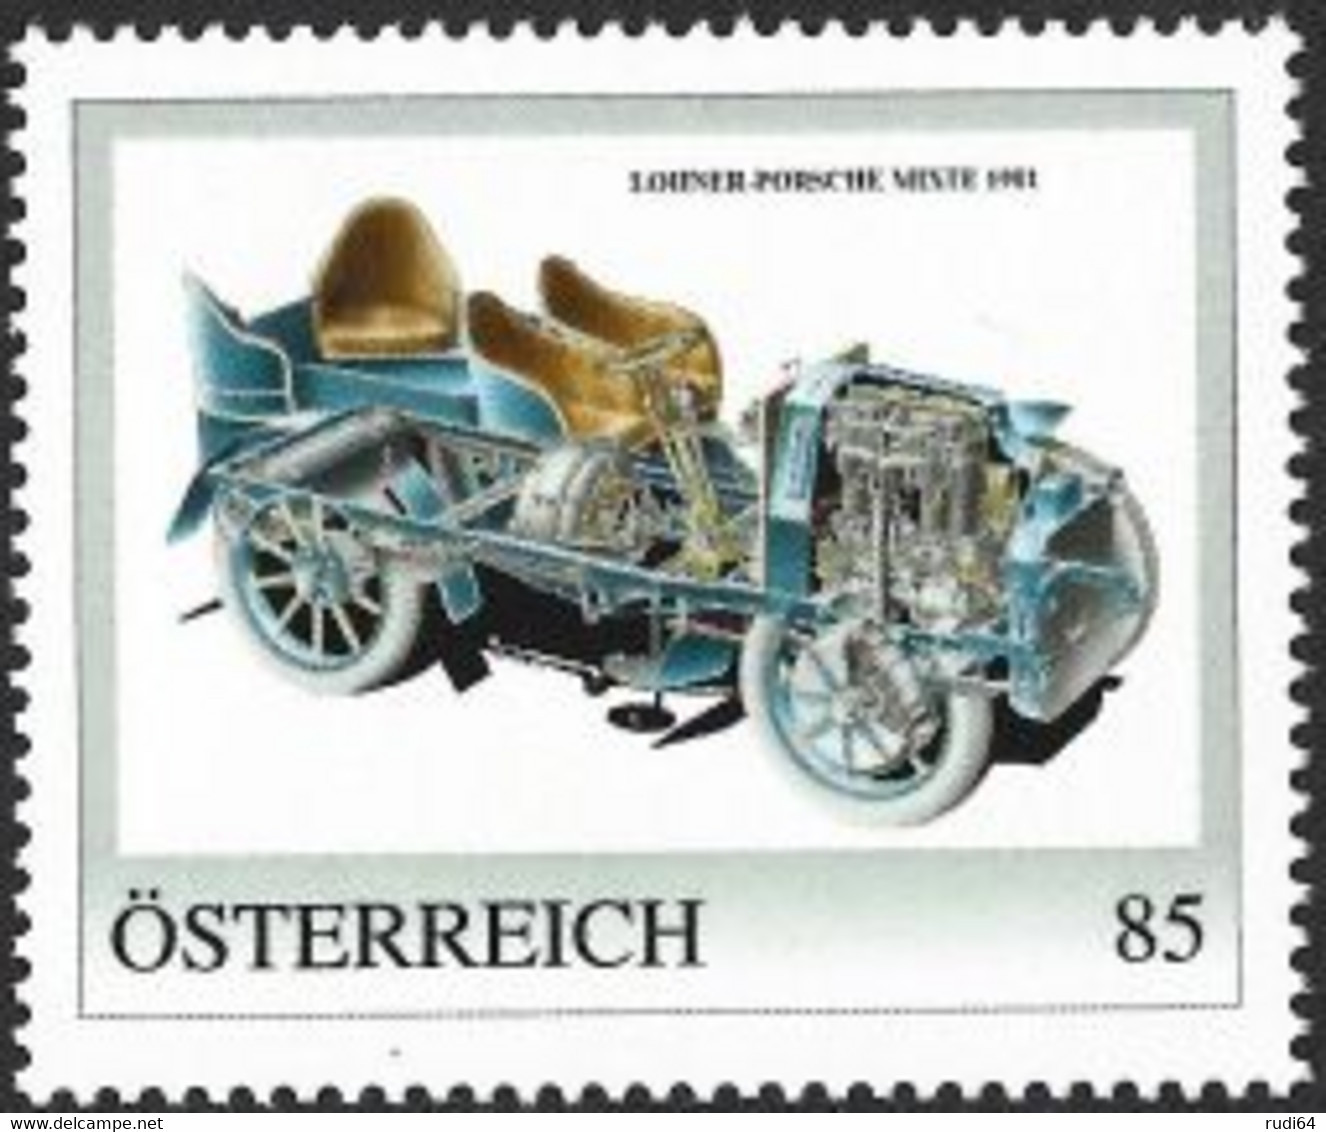 2022 Lohner-Porsche Mixte 1901, Personalisierte Briefmarke 2022, Konstruktion Von Ferdinand Porsche, 85 Cent, Automobile - Neufs